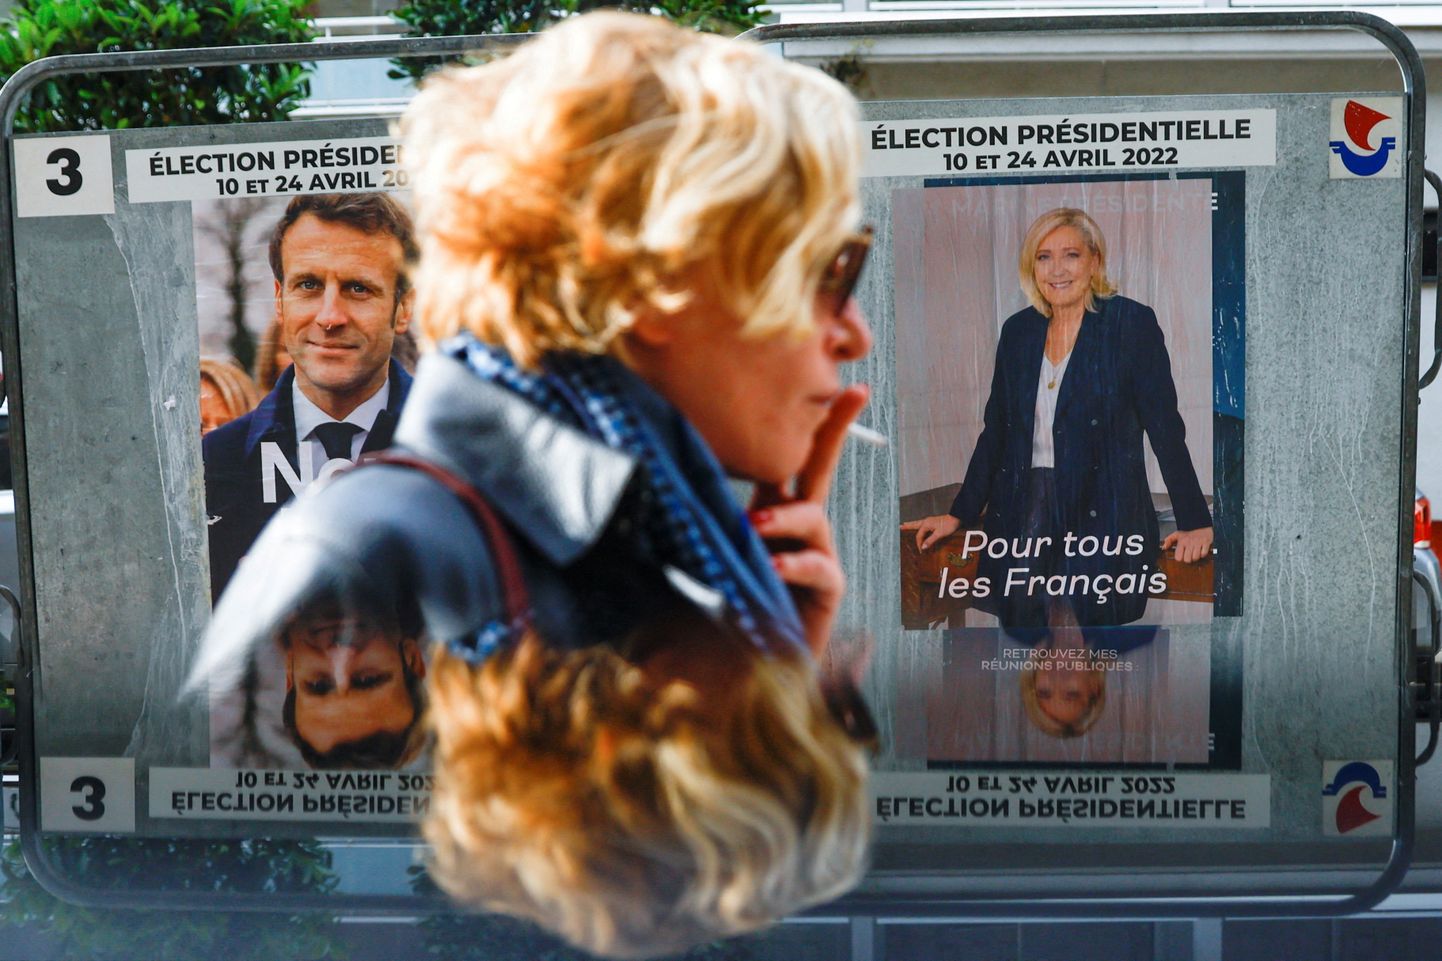 Naine möödumas Prantsuse presidendikandidaatide valimisplakatitest.